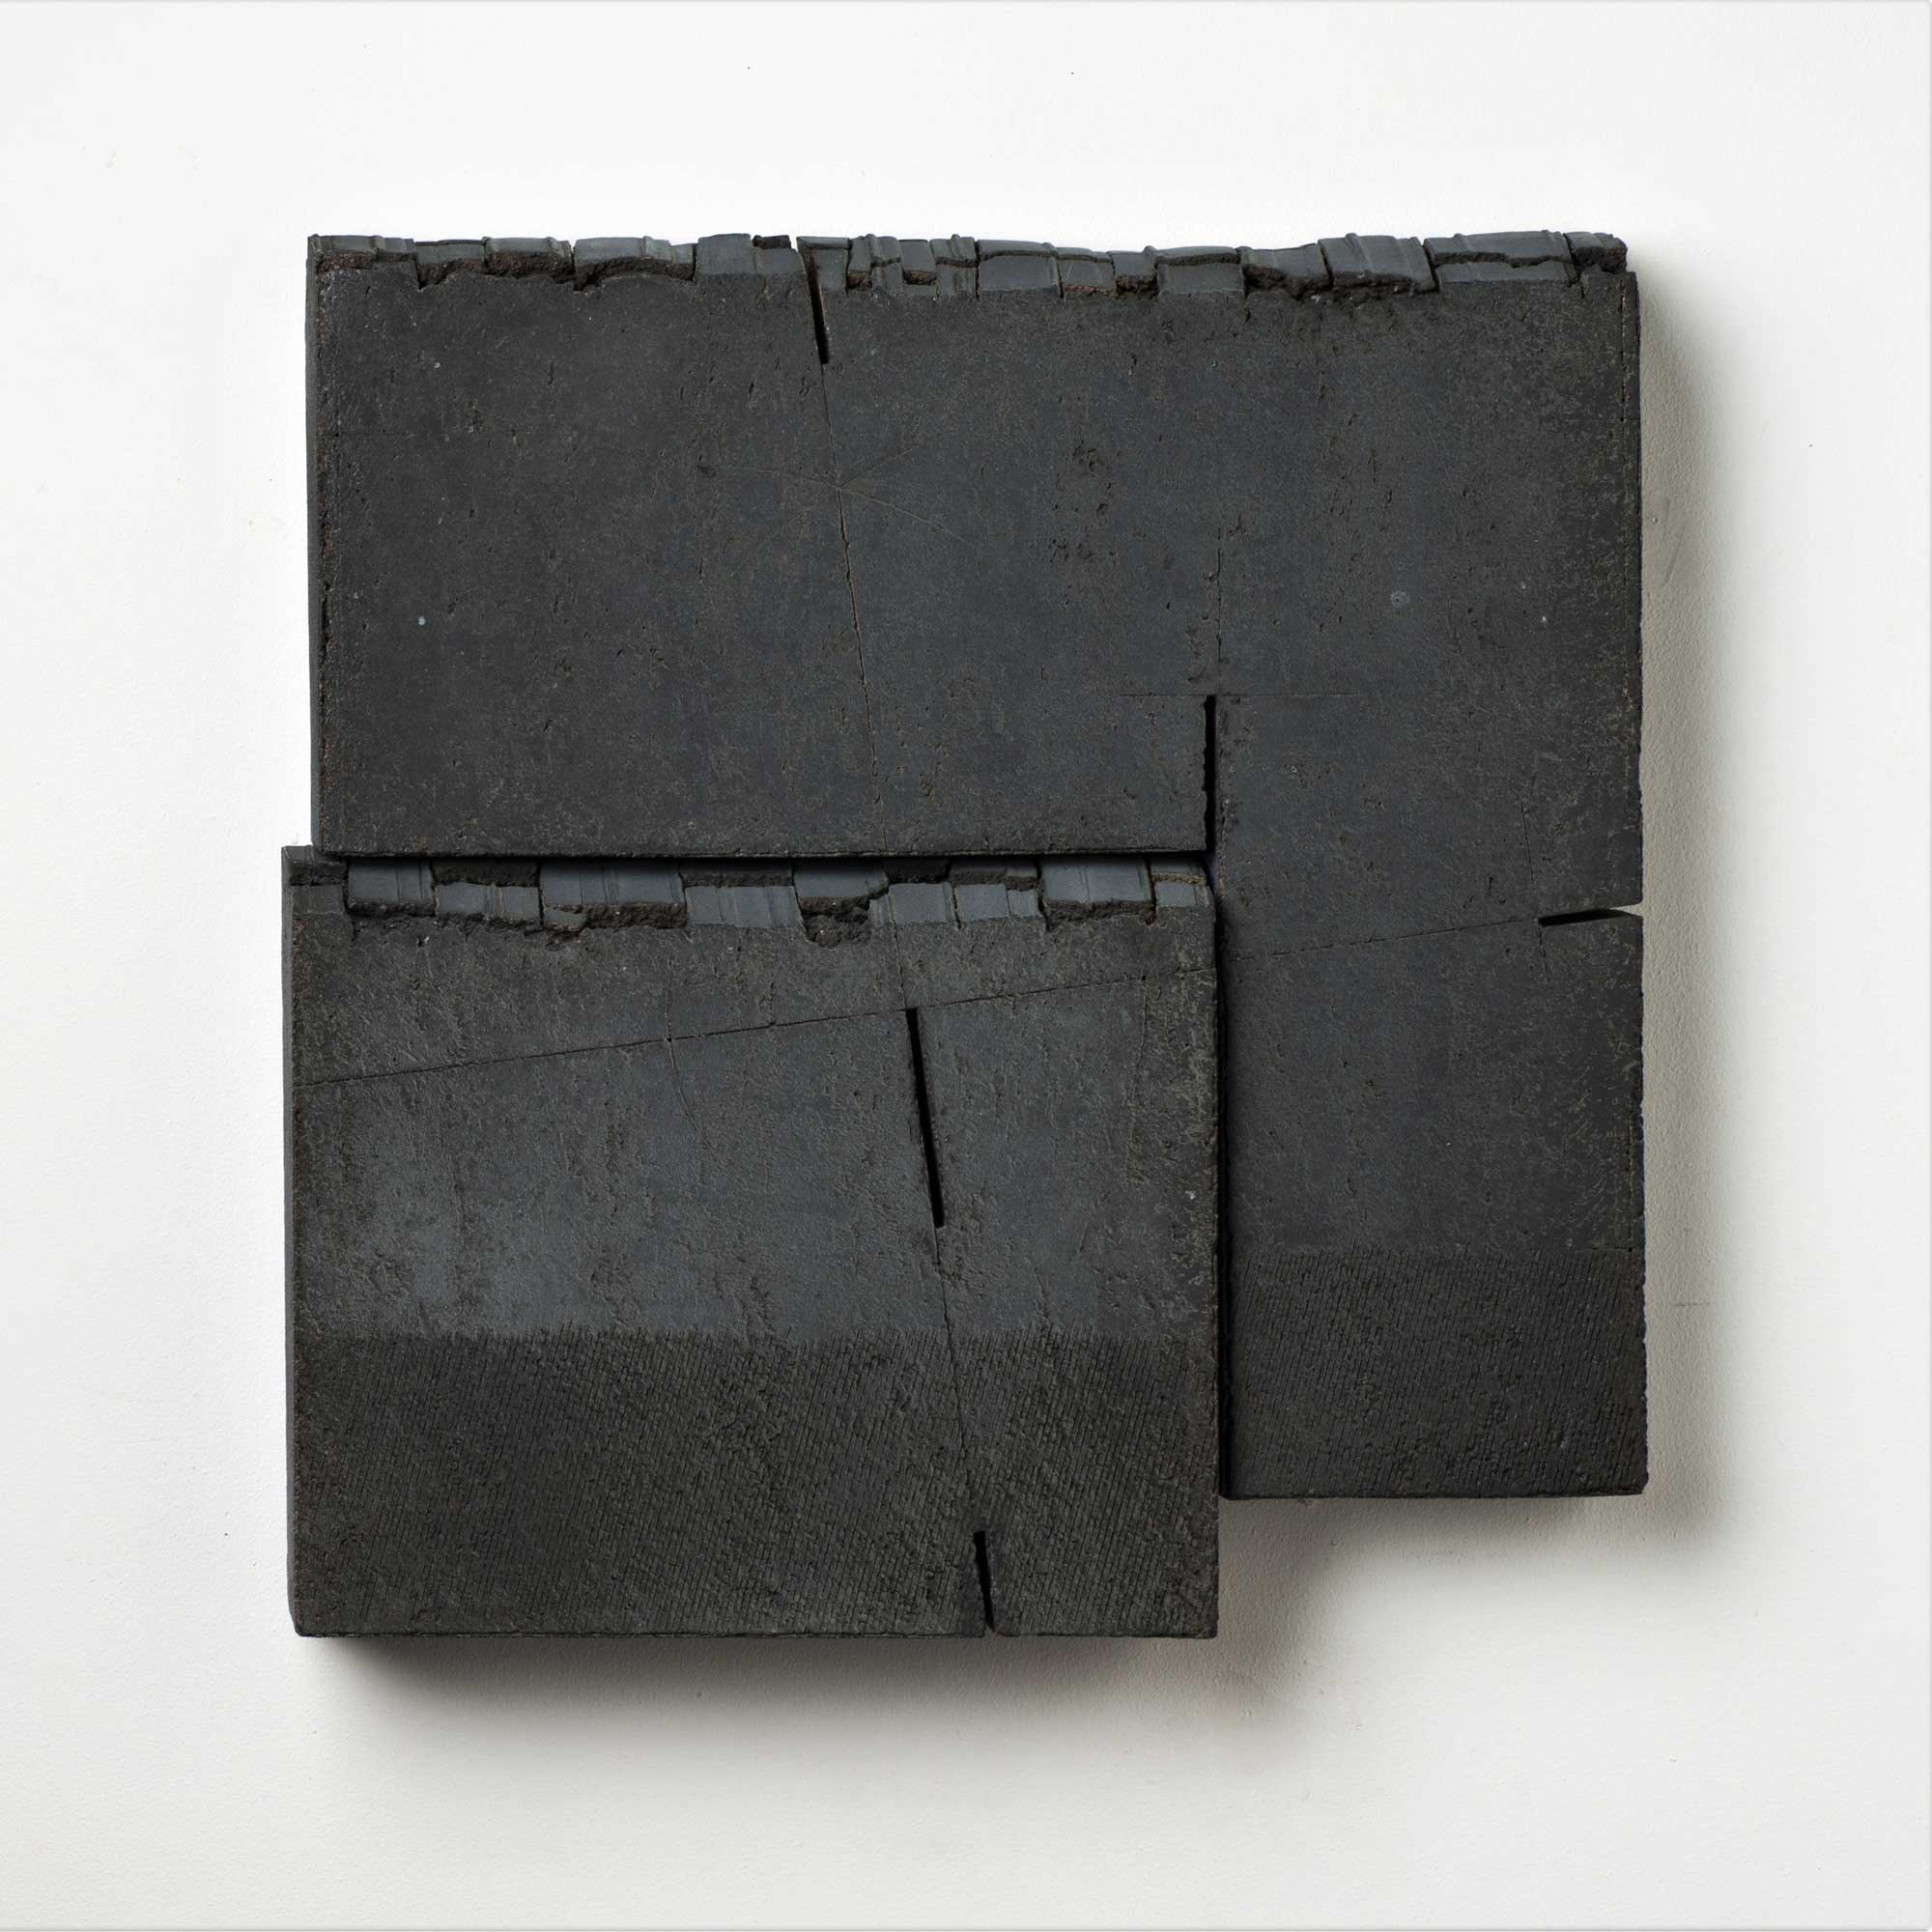 Fragments # 3 - Oxydes et engobes sur grès - 48,5 x 47,5 x 7 cm - 2011 - Photo : J. Vandenberg
